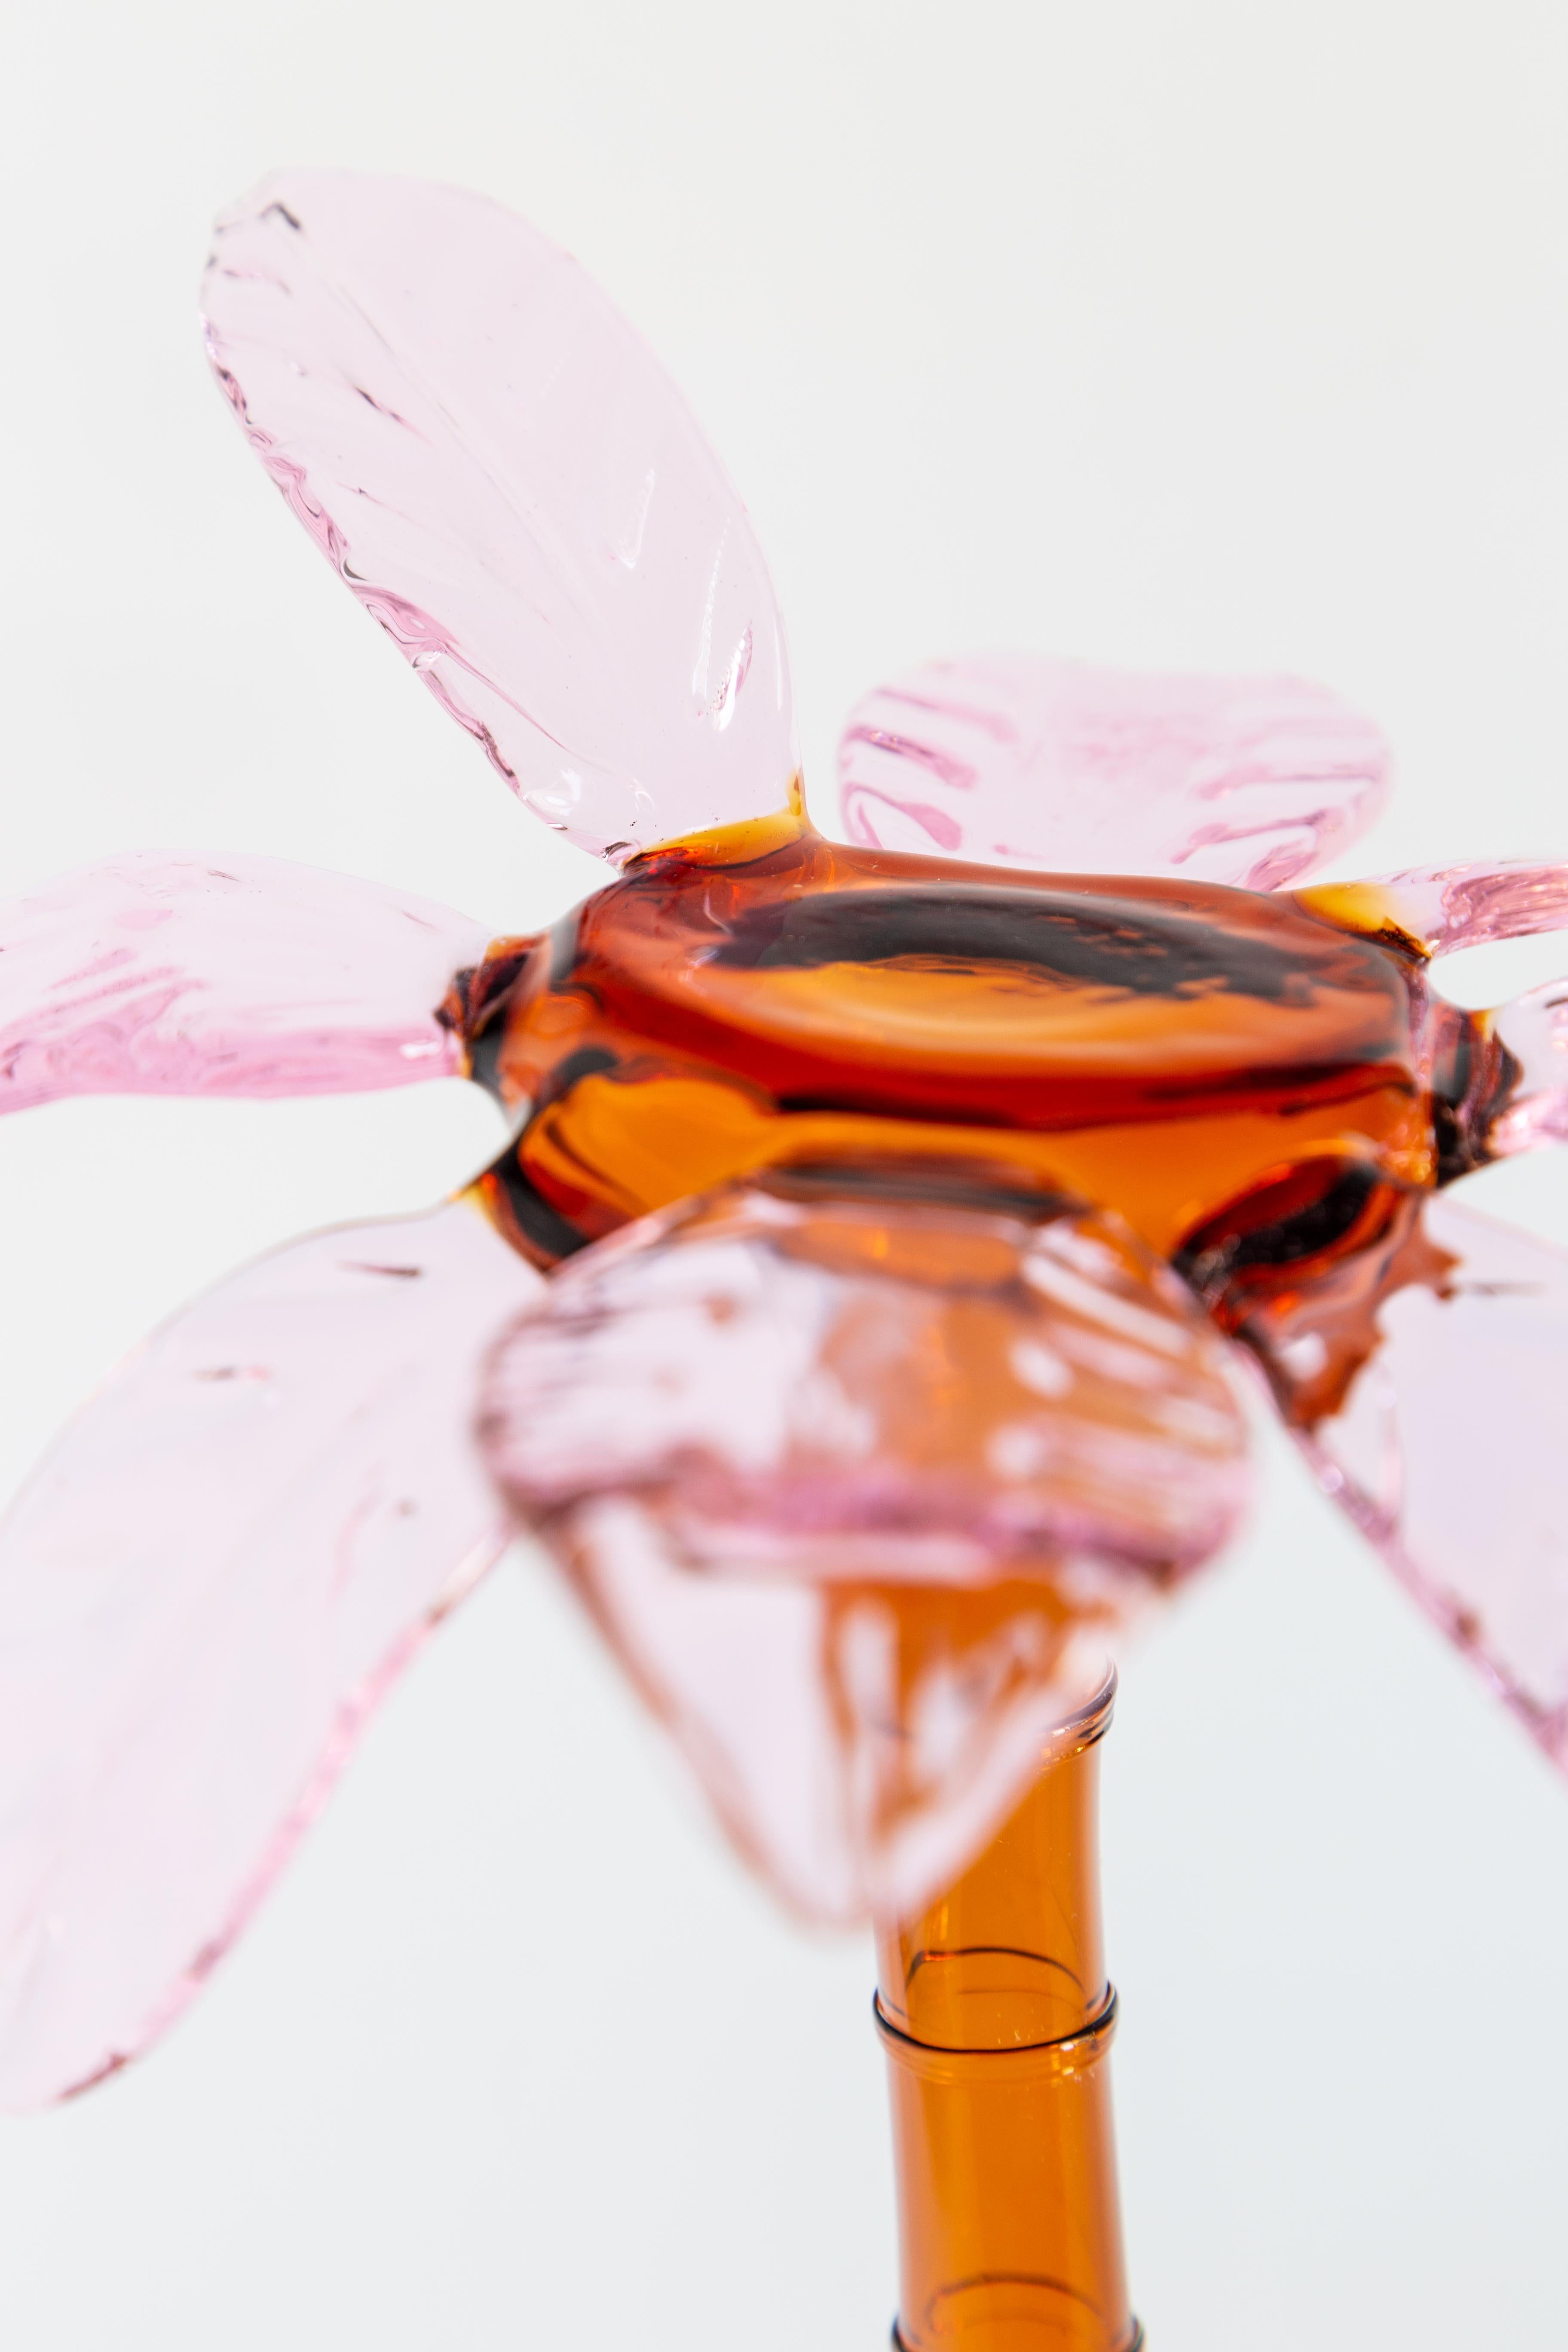 Made in Italy Gebäckständer aus mundgeblasenem Glas und in Palmenform.
Die kleine durchsichtige Palme hat oben eine ebene Fläche zur Aufnahme von Gebäck.
Orange und rosa Farbe. Entwurf von Vito Nesta.